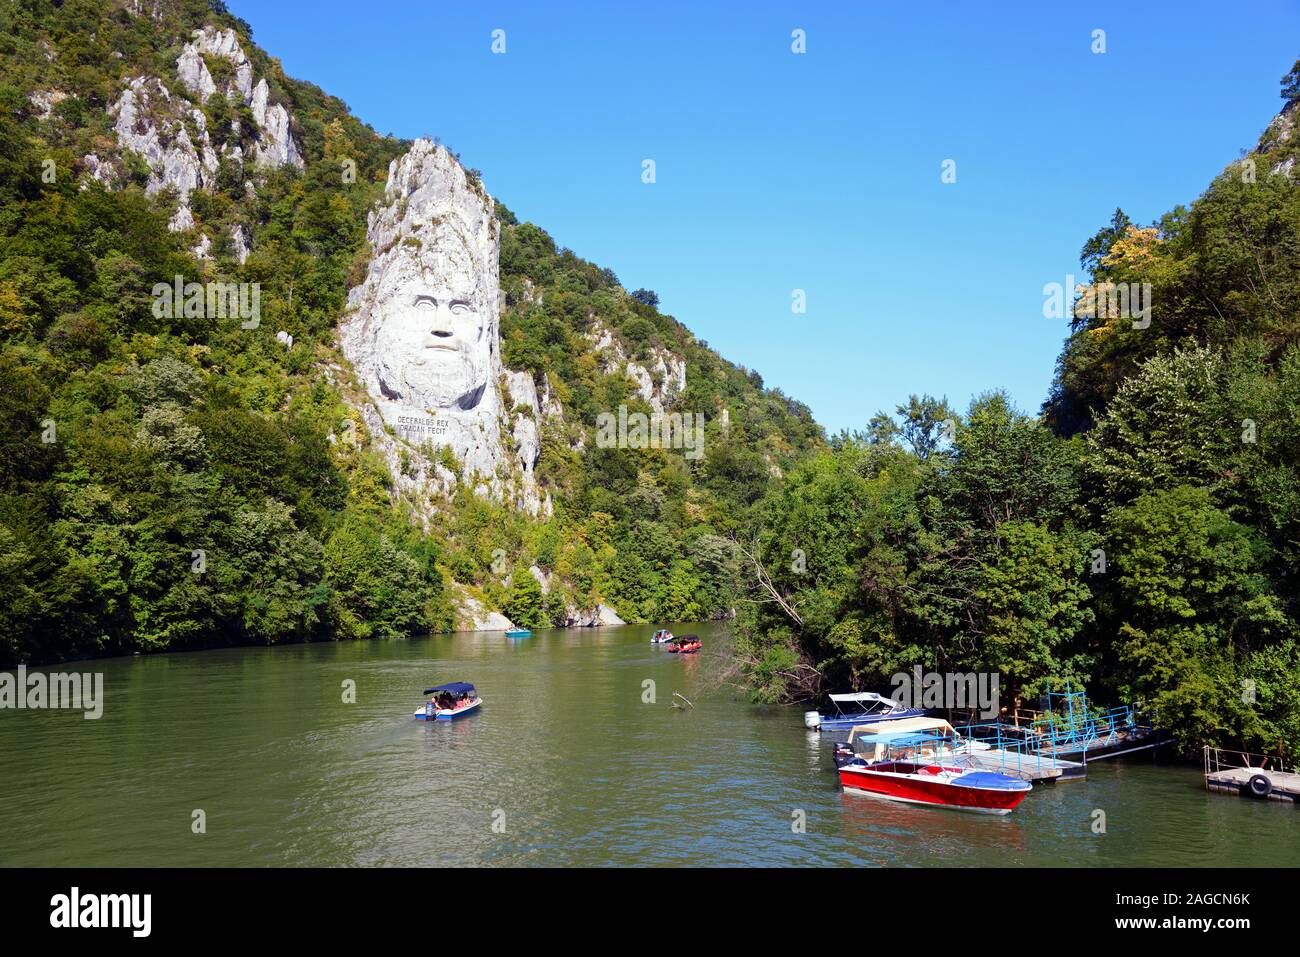 Statue de la Ligne Daker Roi Decebalus sur les rives du Danube, Dubova, Parc Naturel des Portes de Fer, Roumanie Banque D'Images